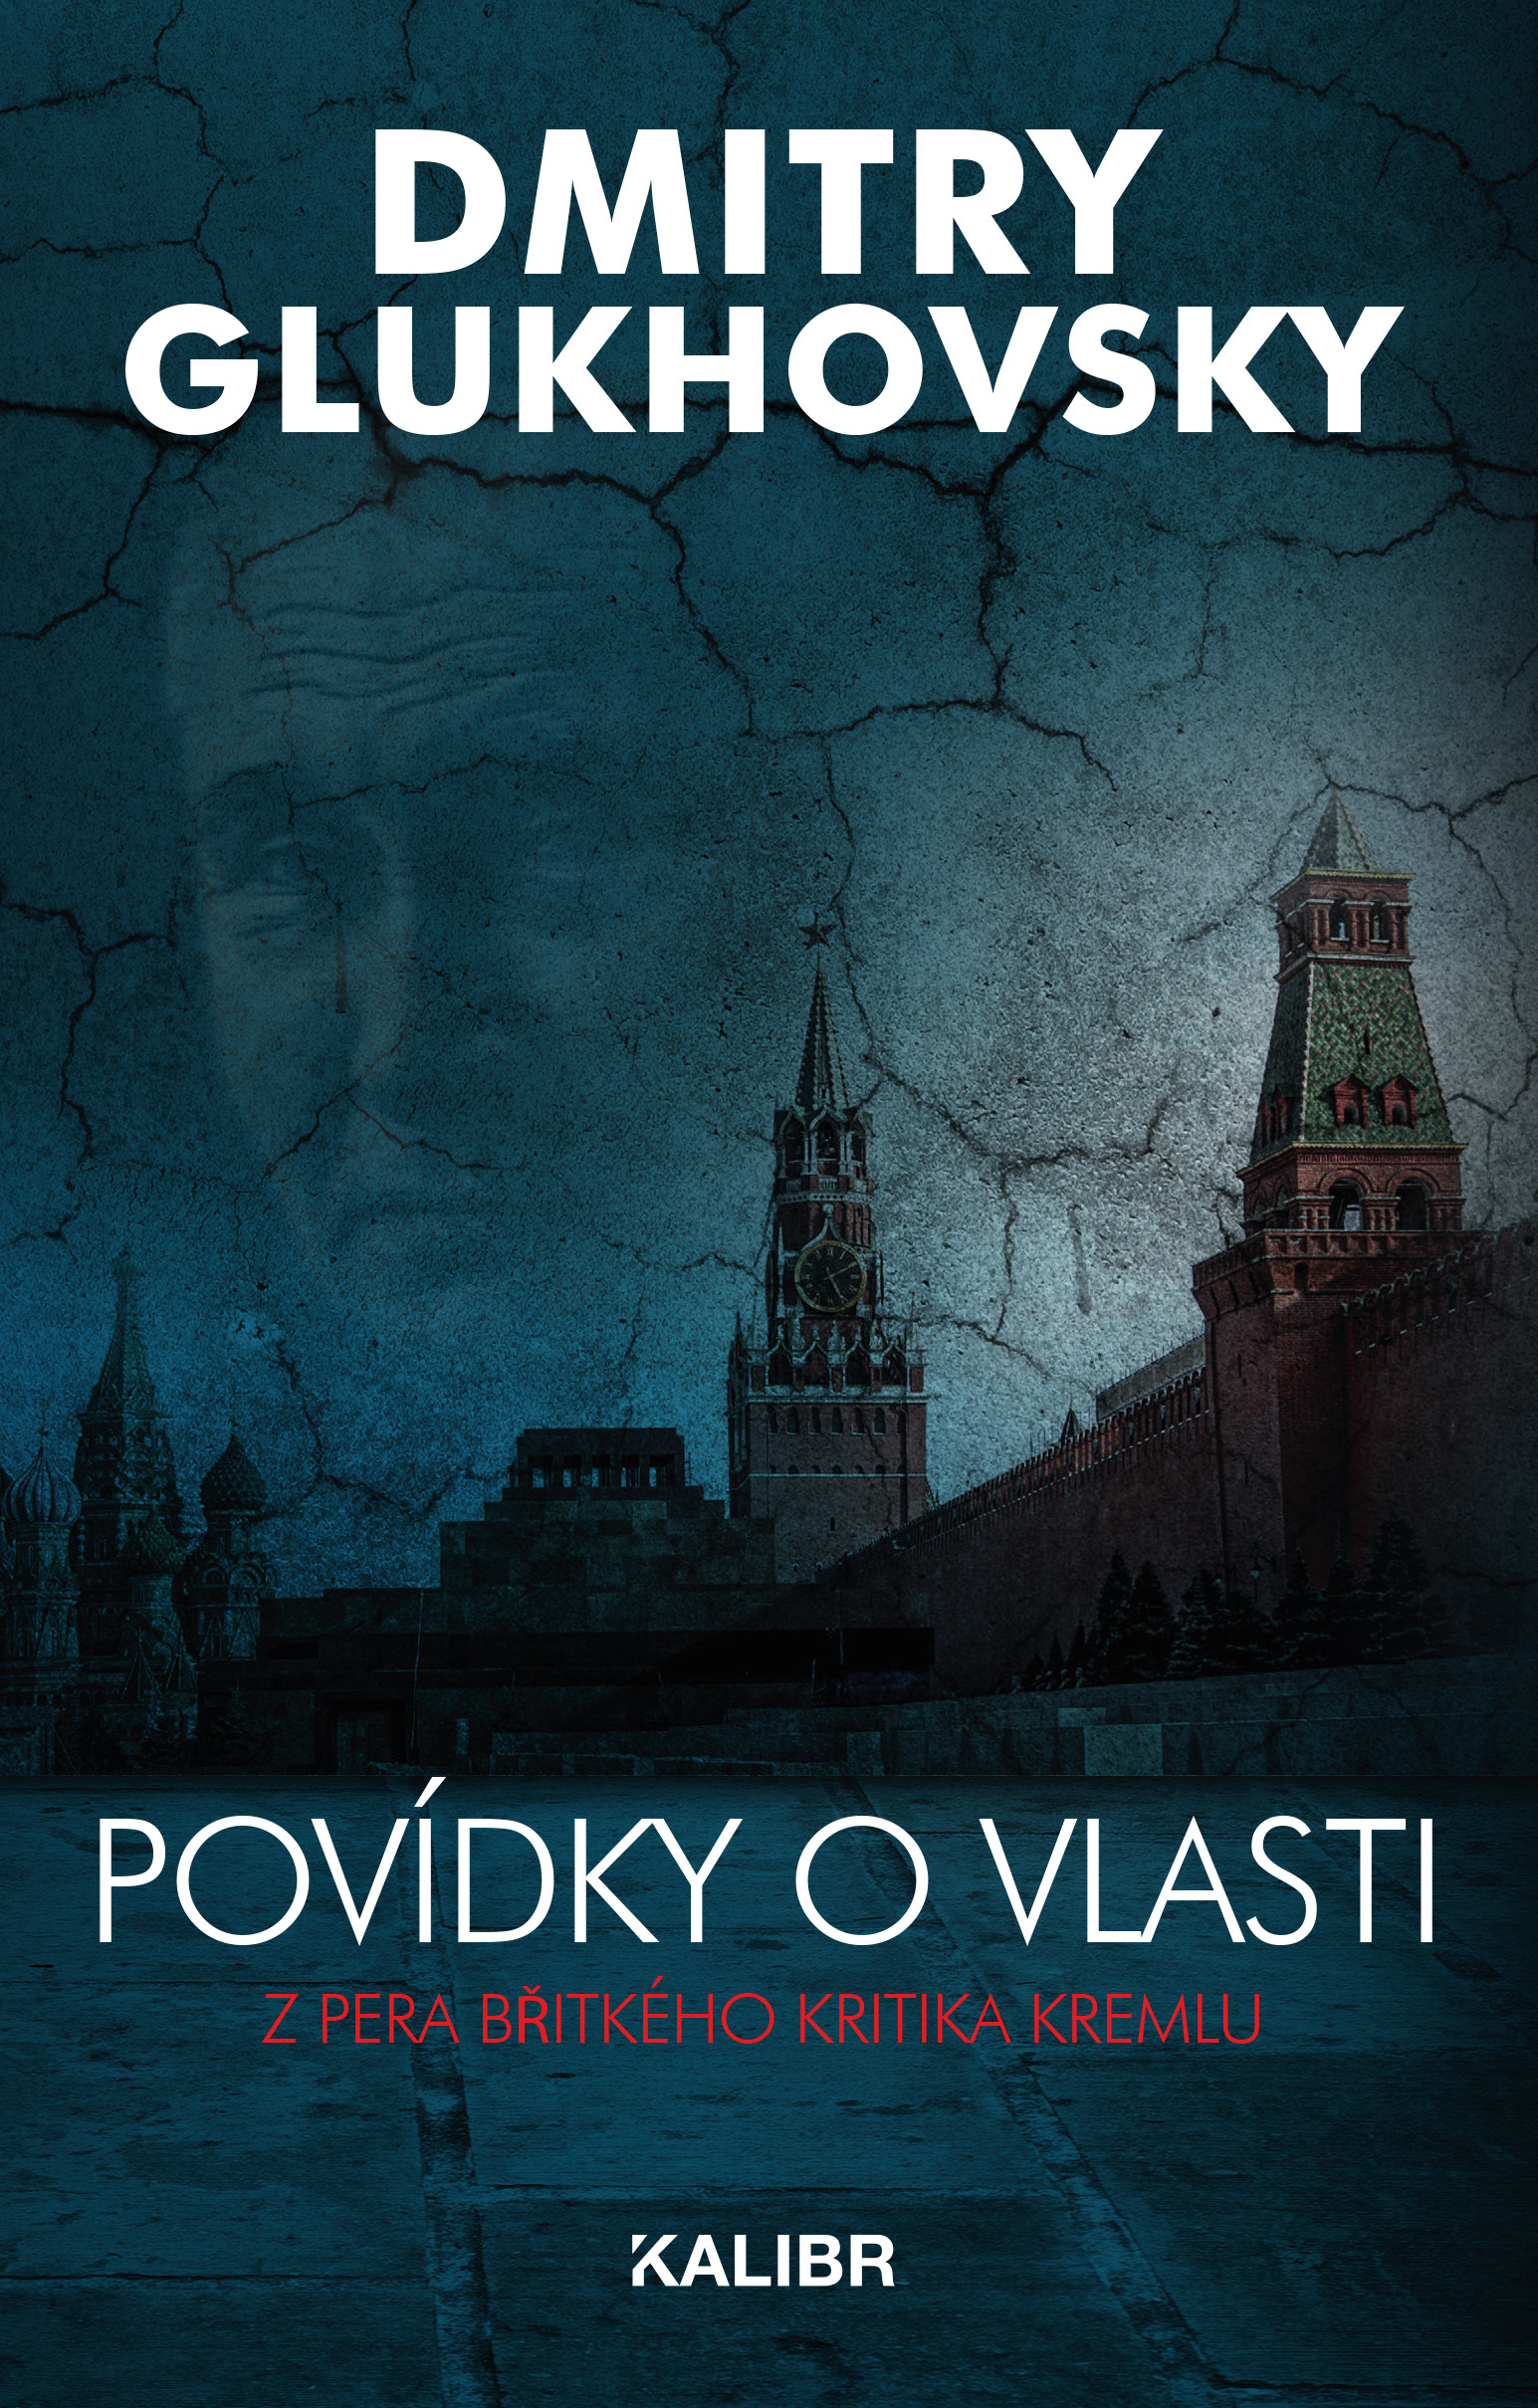 E-kniha Povídky o vlasti - Dmitry Glukhovsky